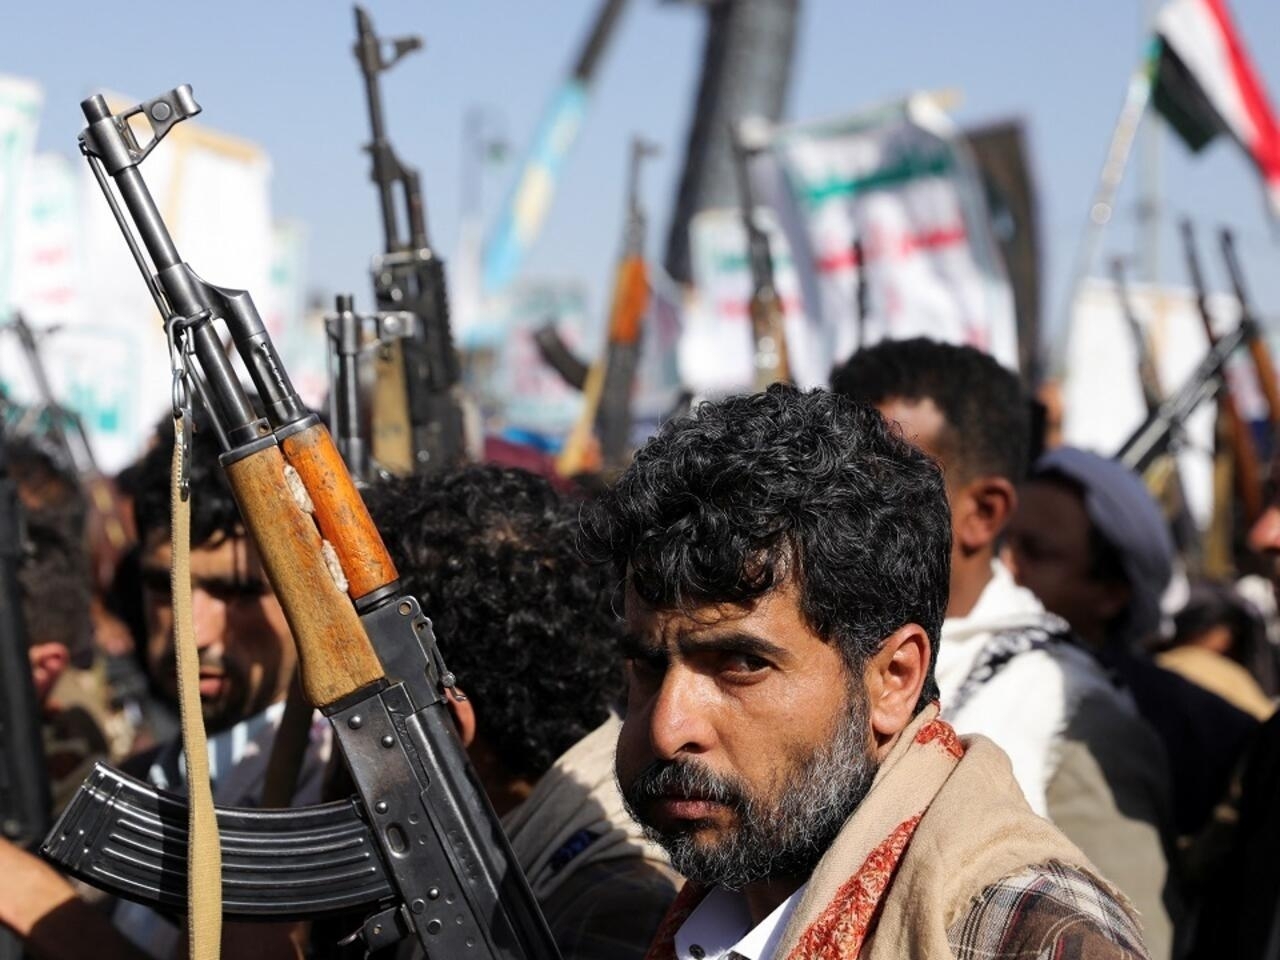 الأمم المتحدة تحث الحوثي على الإفراج الفوري وغير المشروط عن جميع موظفيها